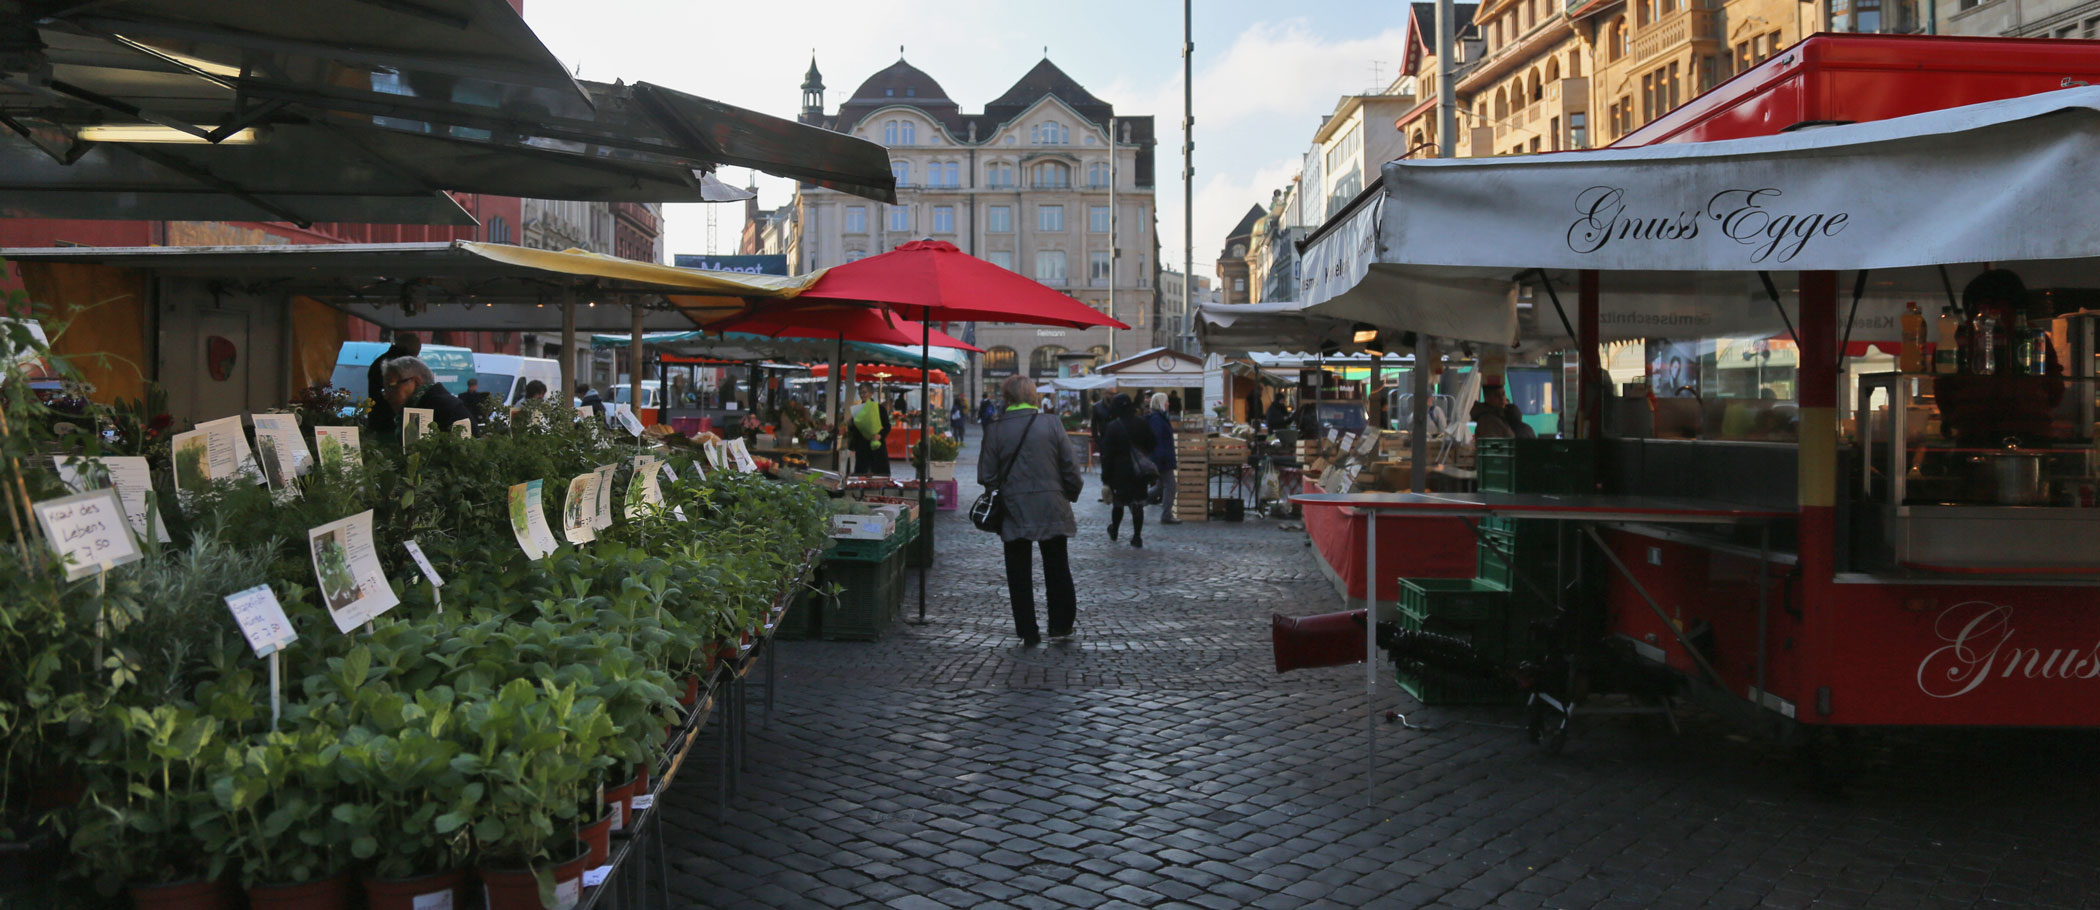 Marktplatz Basel mit Rathaus im Hintergrund